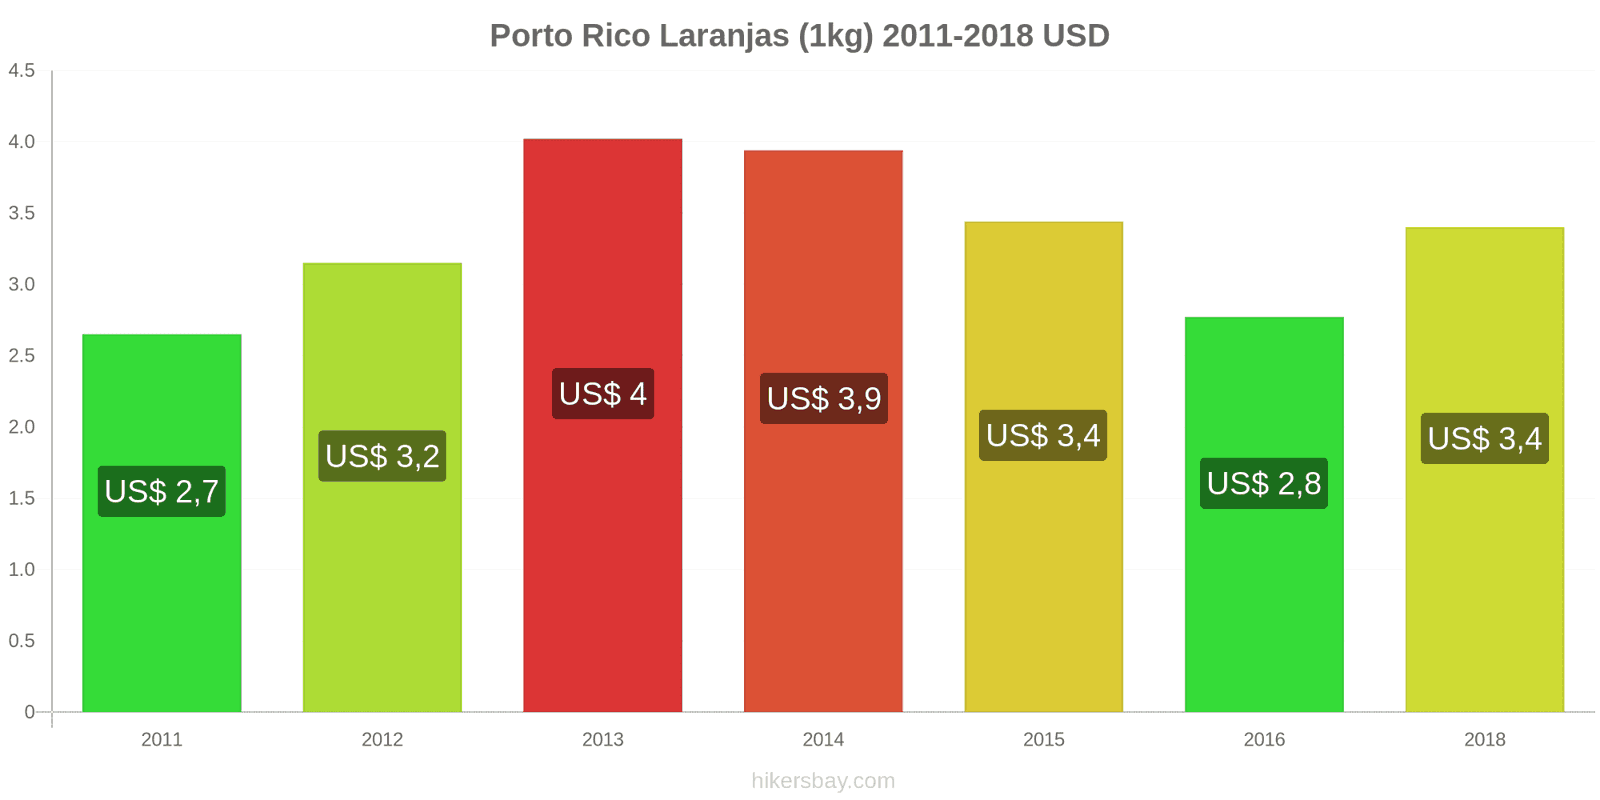 Porto Rico mudanças de preços Laranjas (1kg) hikersbay.com